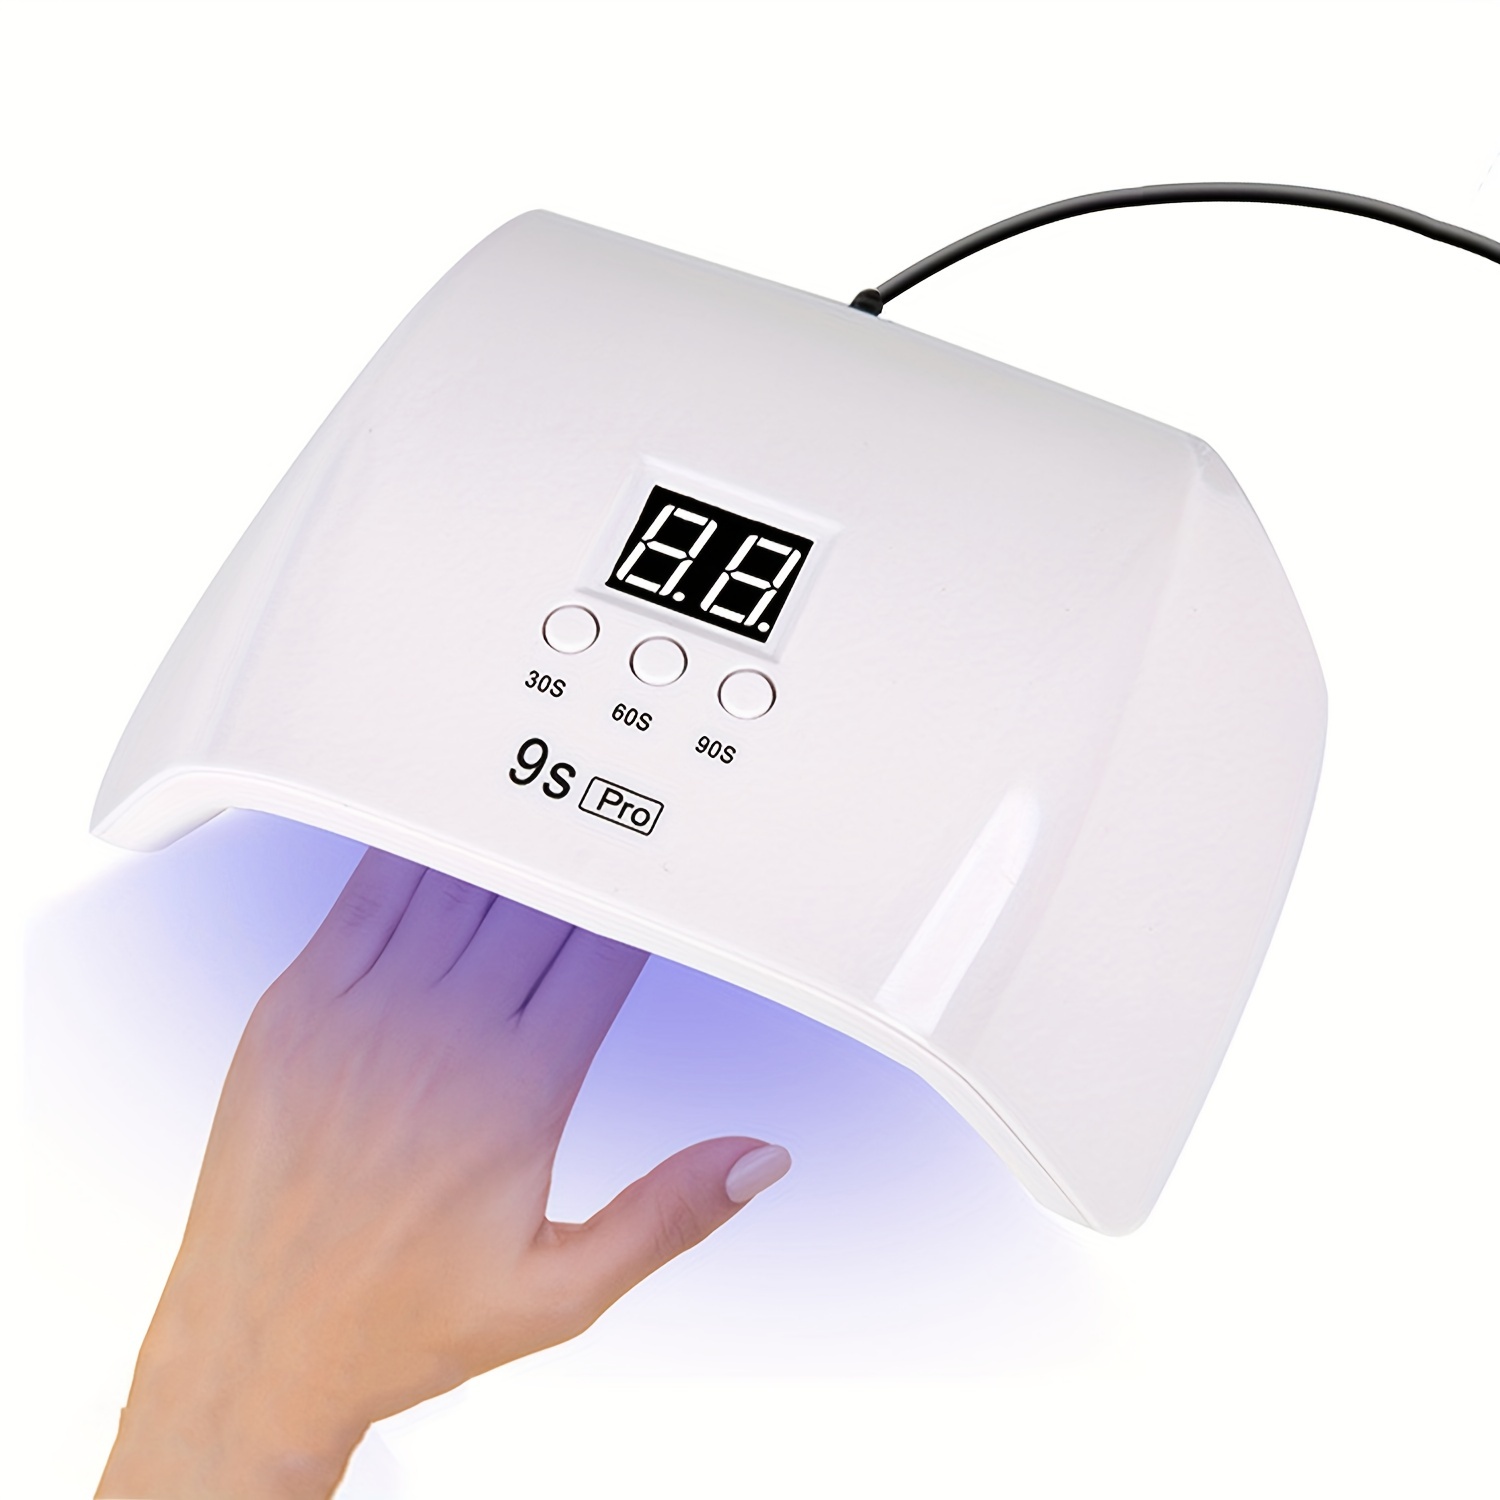 

Uv Led Nail Lamp, Uv Led Nail Dryer Light For Gel Nails Polish, 3 Timer Settings & Smart Auto Sensor